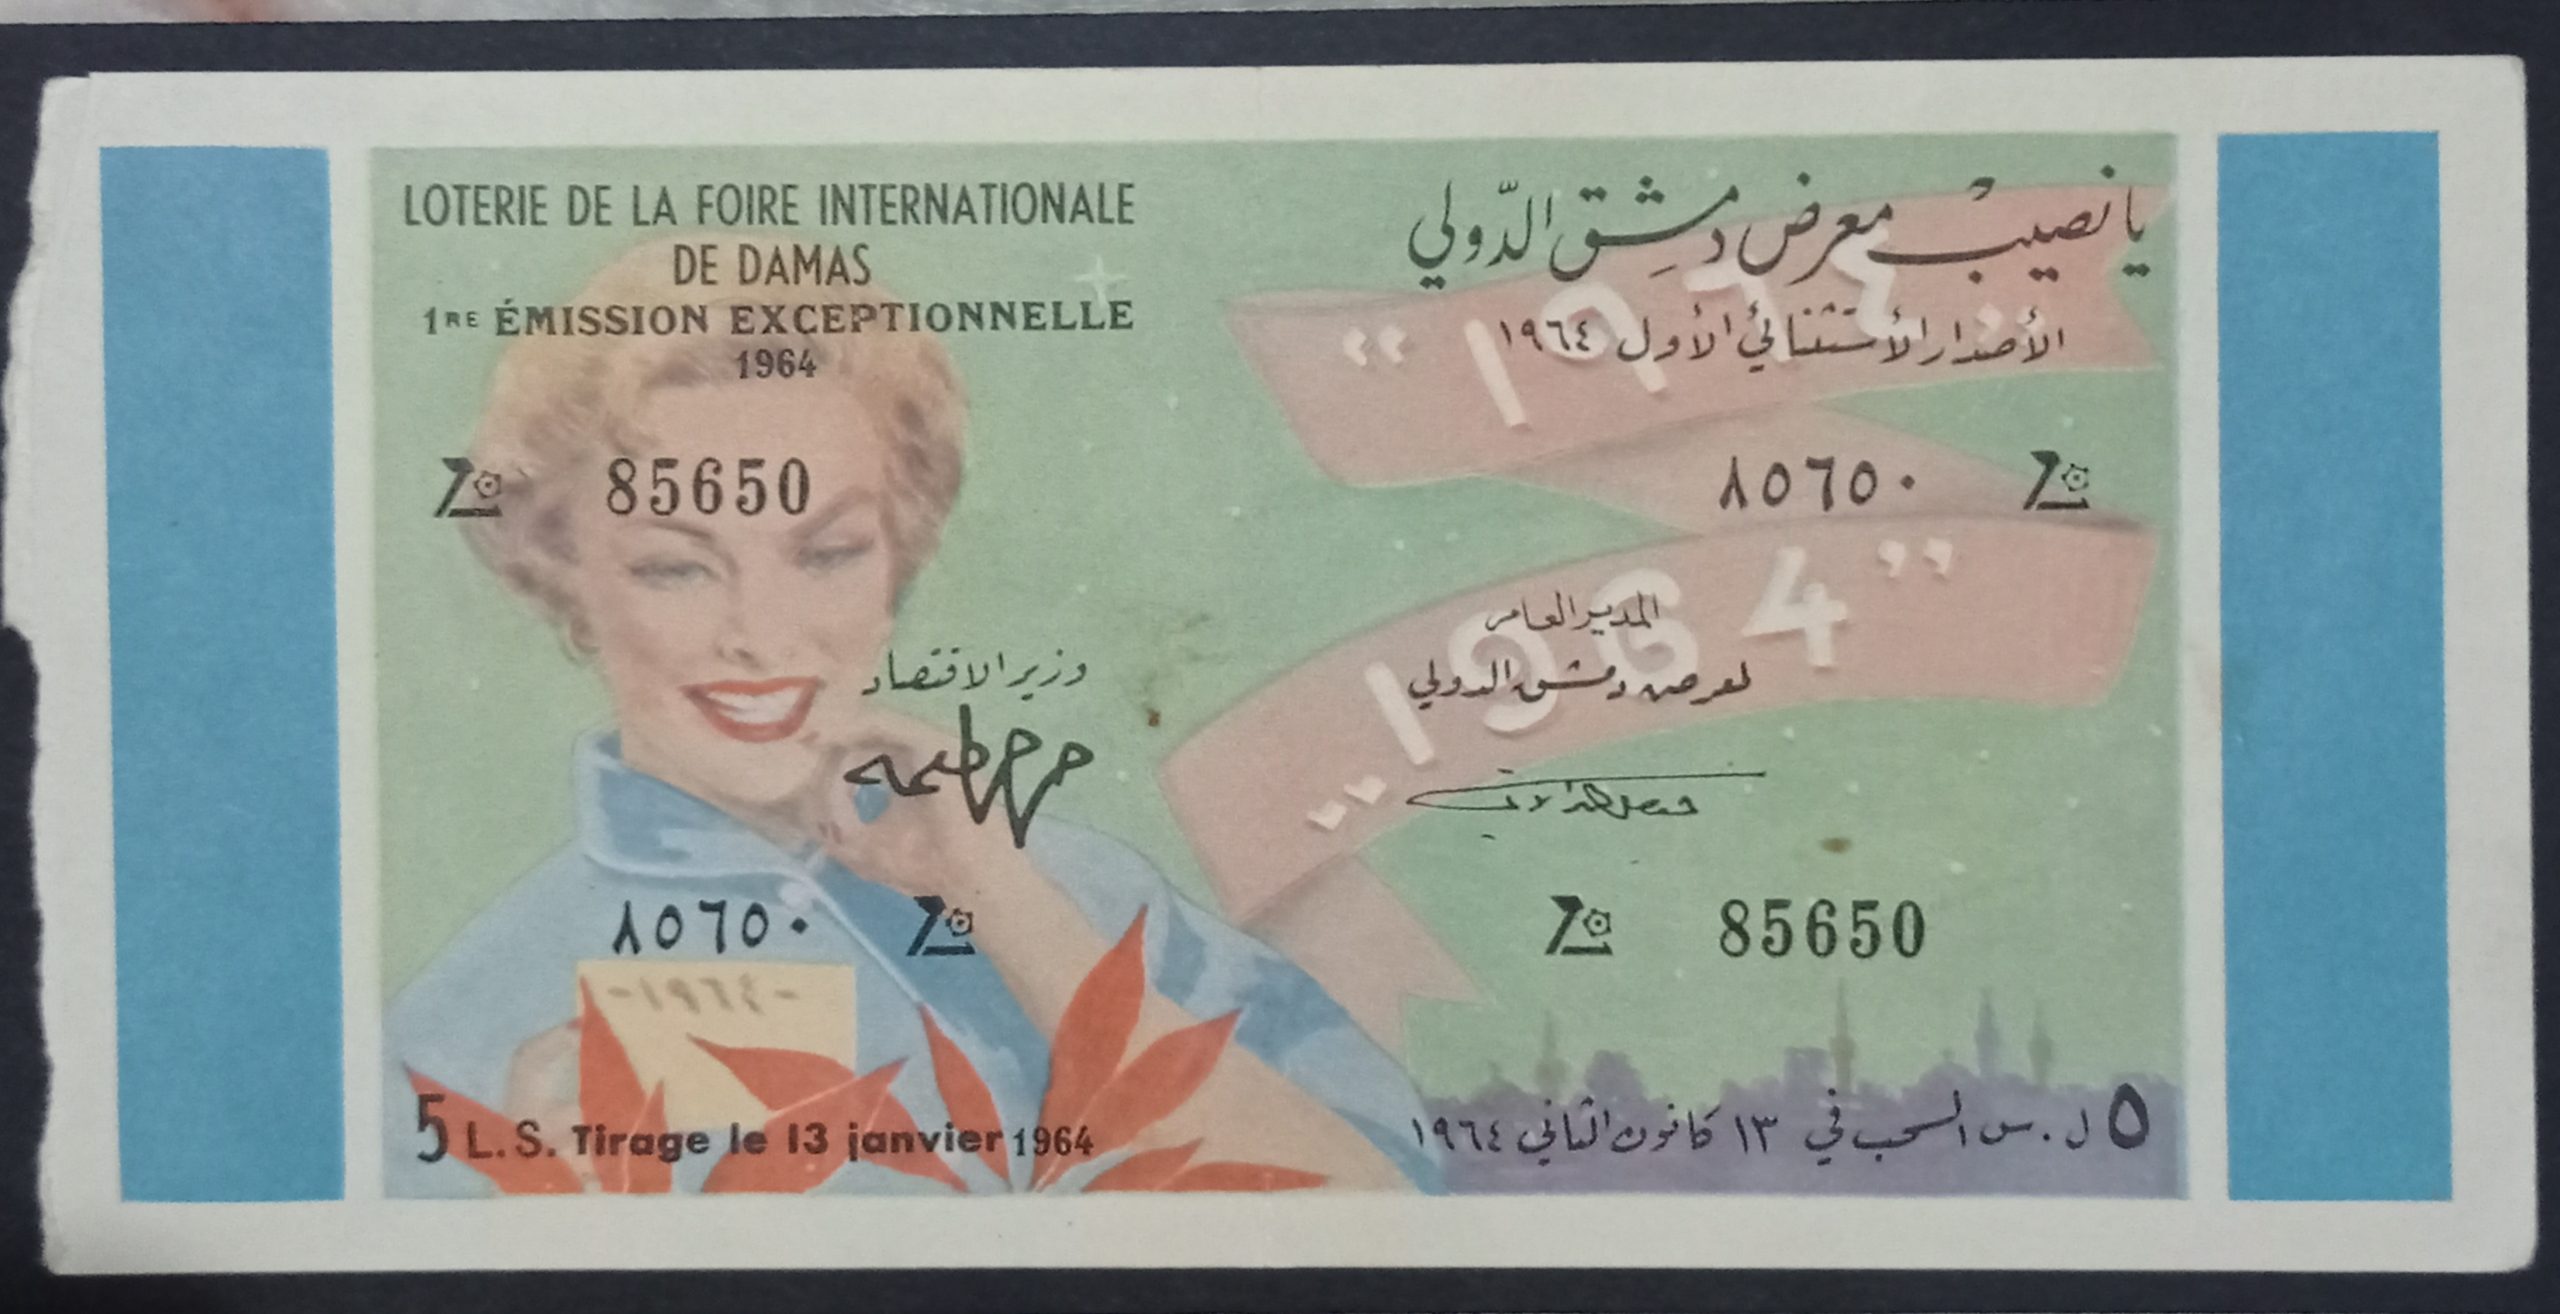 التاريخ السوري المعاصر - يانصيب معرض دمشق الدولي - الإصدار الاستثنائي الأول عام 1964